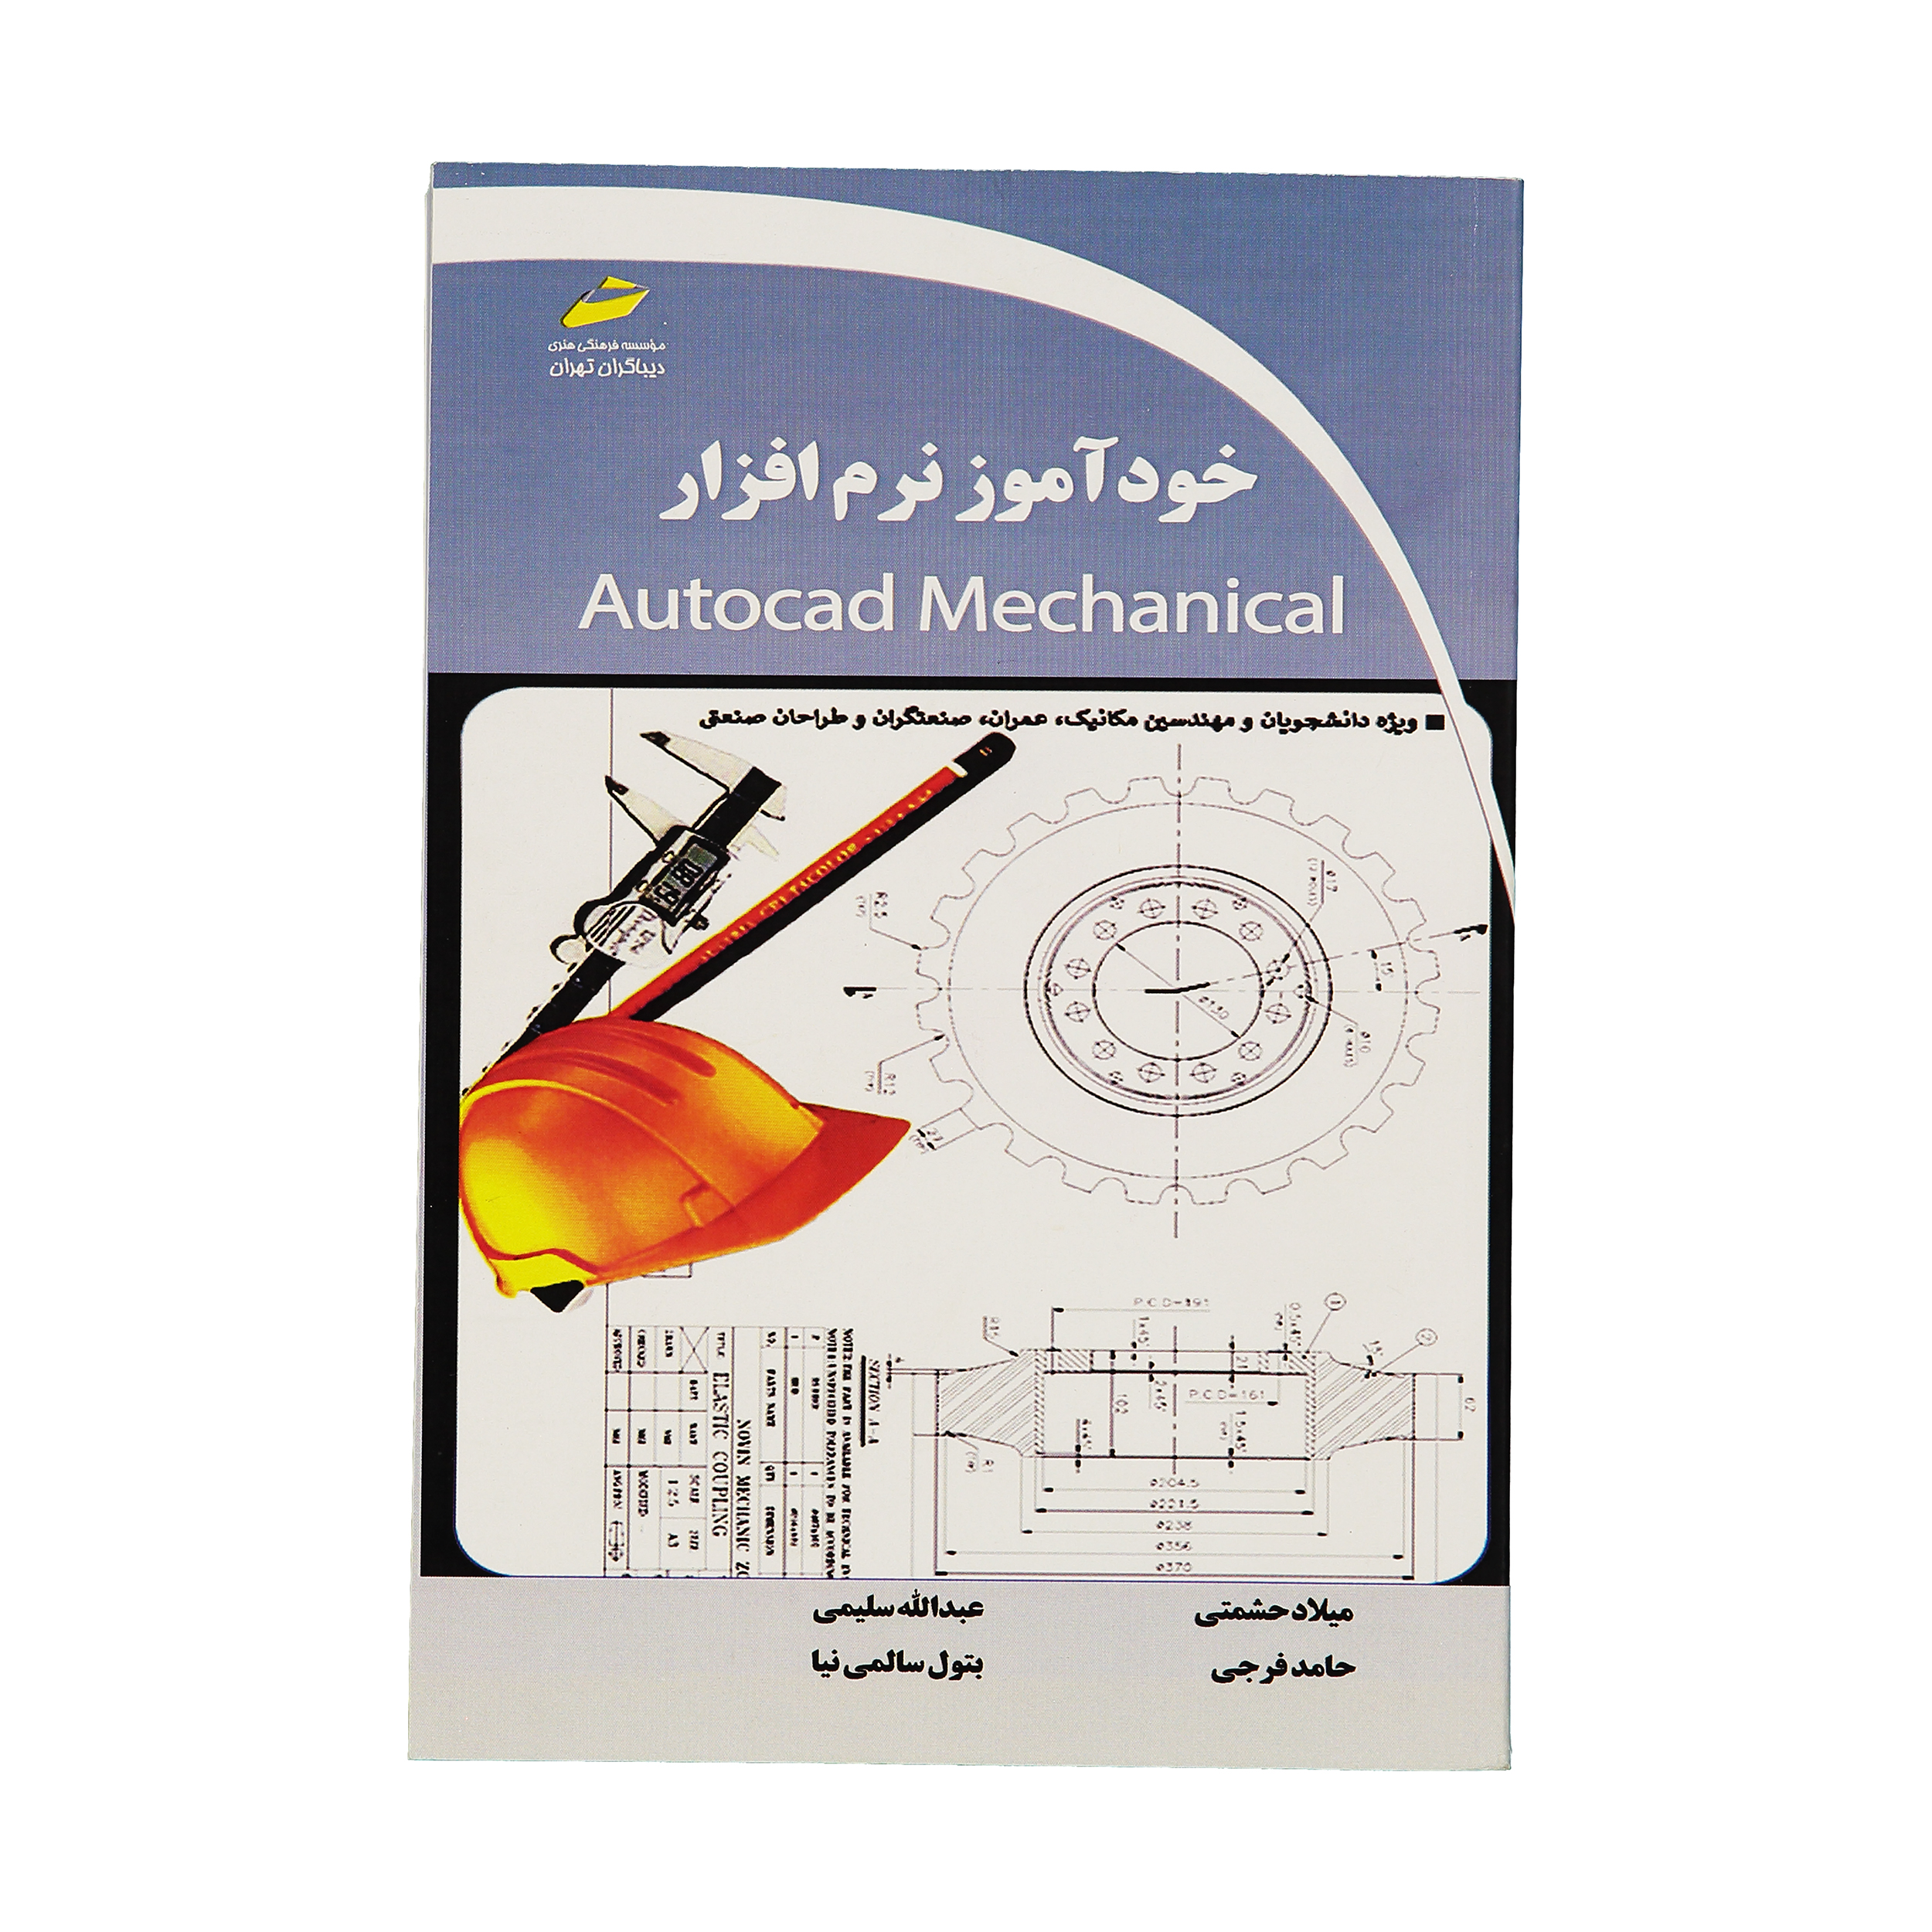 کتاب خودآموز نرم افزار Autocad Mechanical اثر جمعی از نویسندگان نشر دیباگران تهران